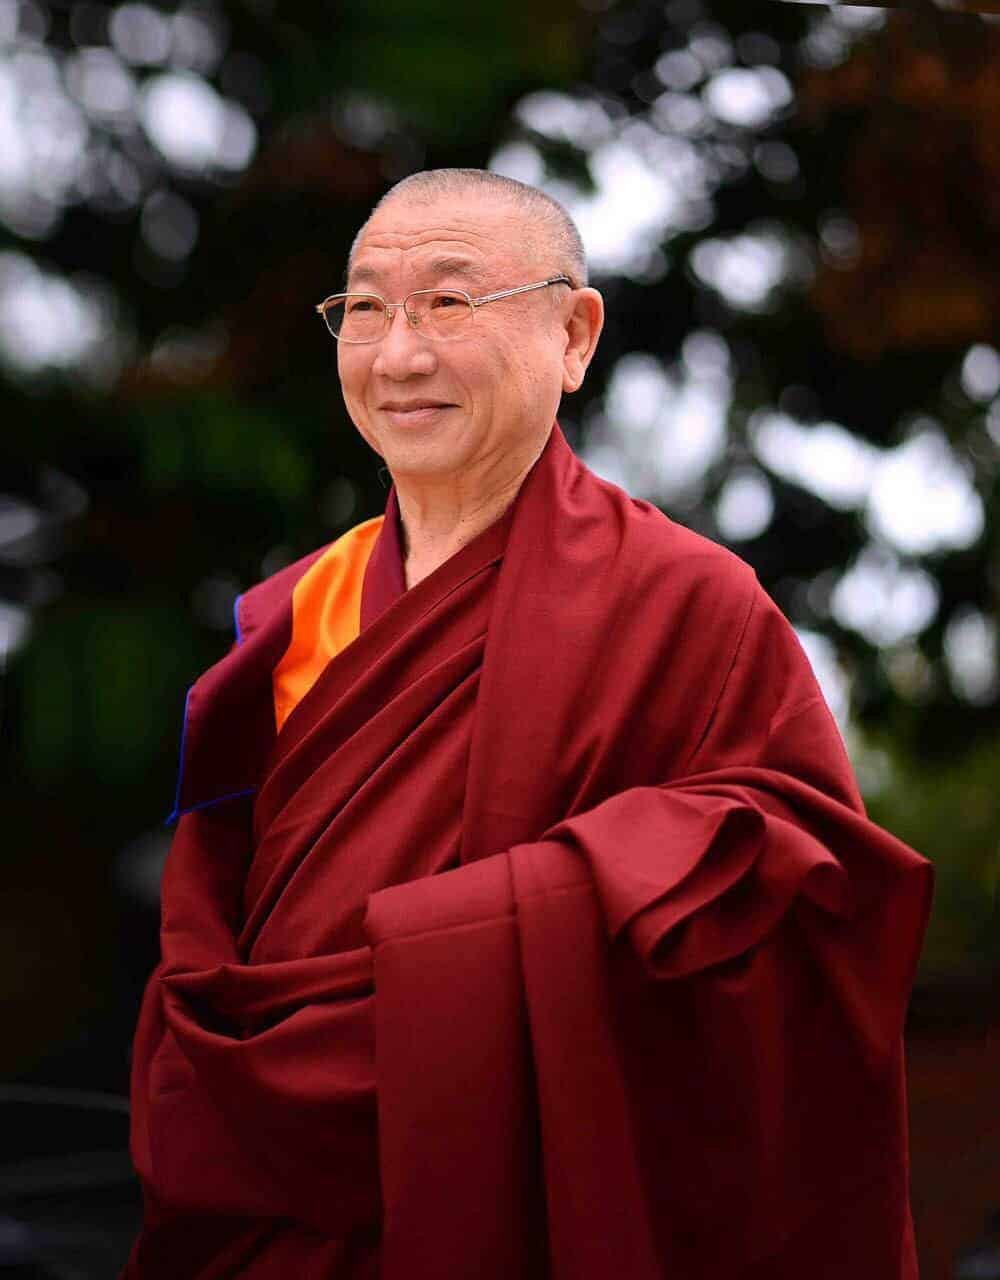 Gosok Rinpoche Vietnam 2017-02-17 b6add0f6f00dada9d10f8ecc6d2d4b7